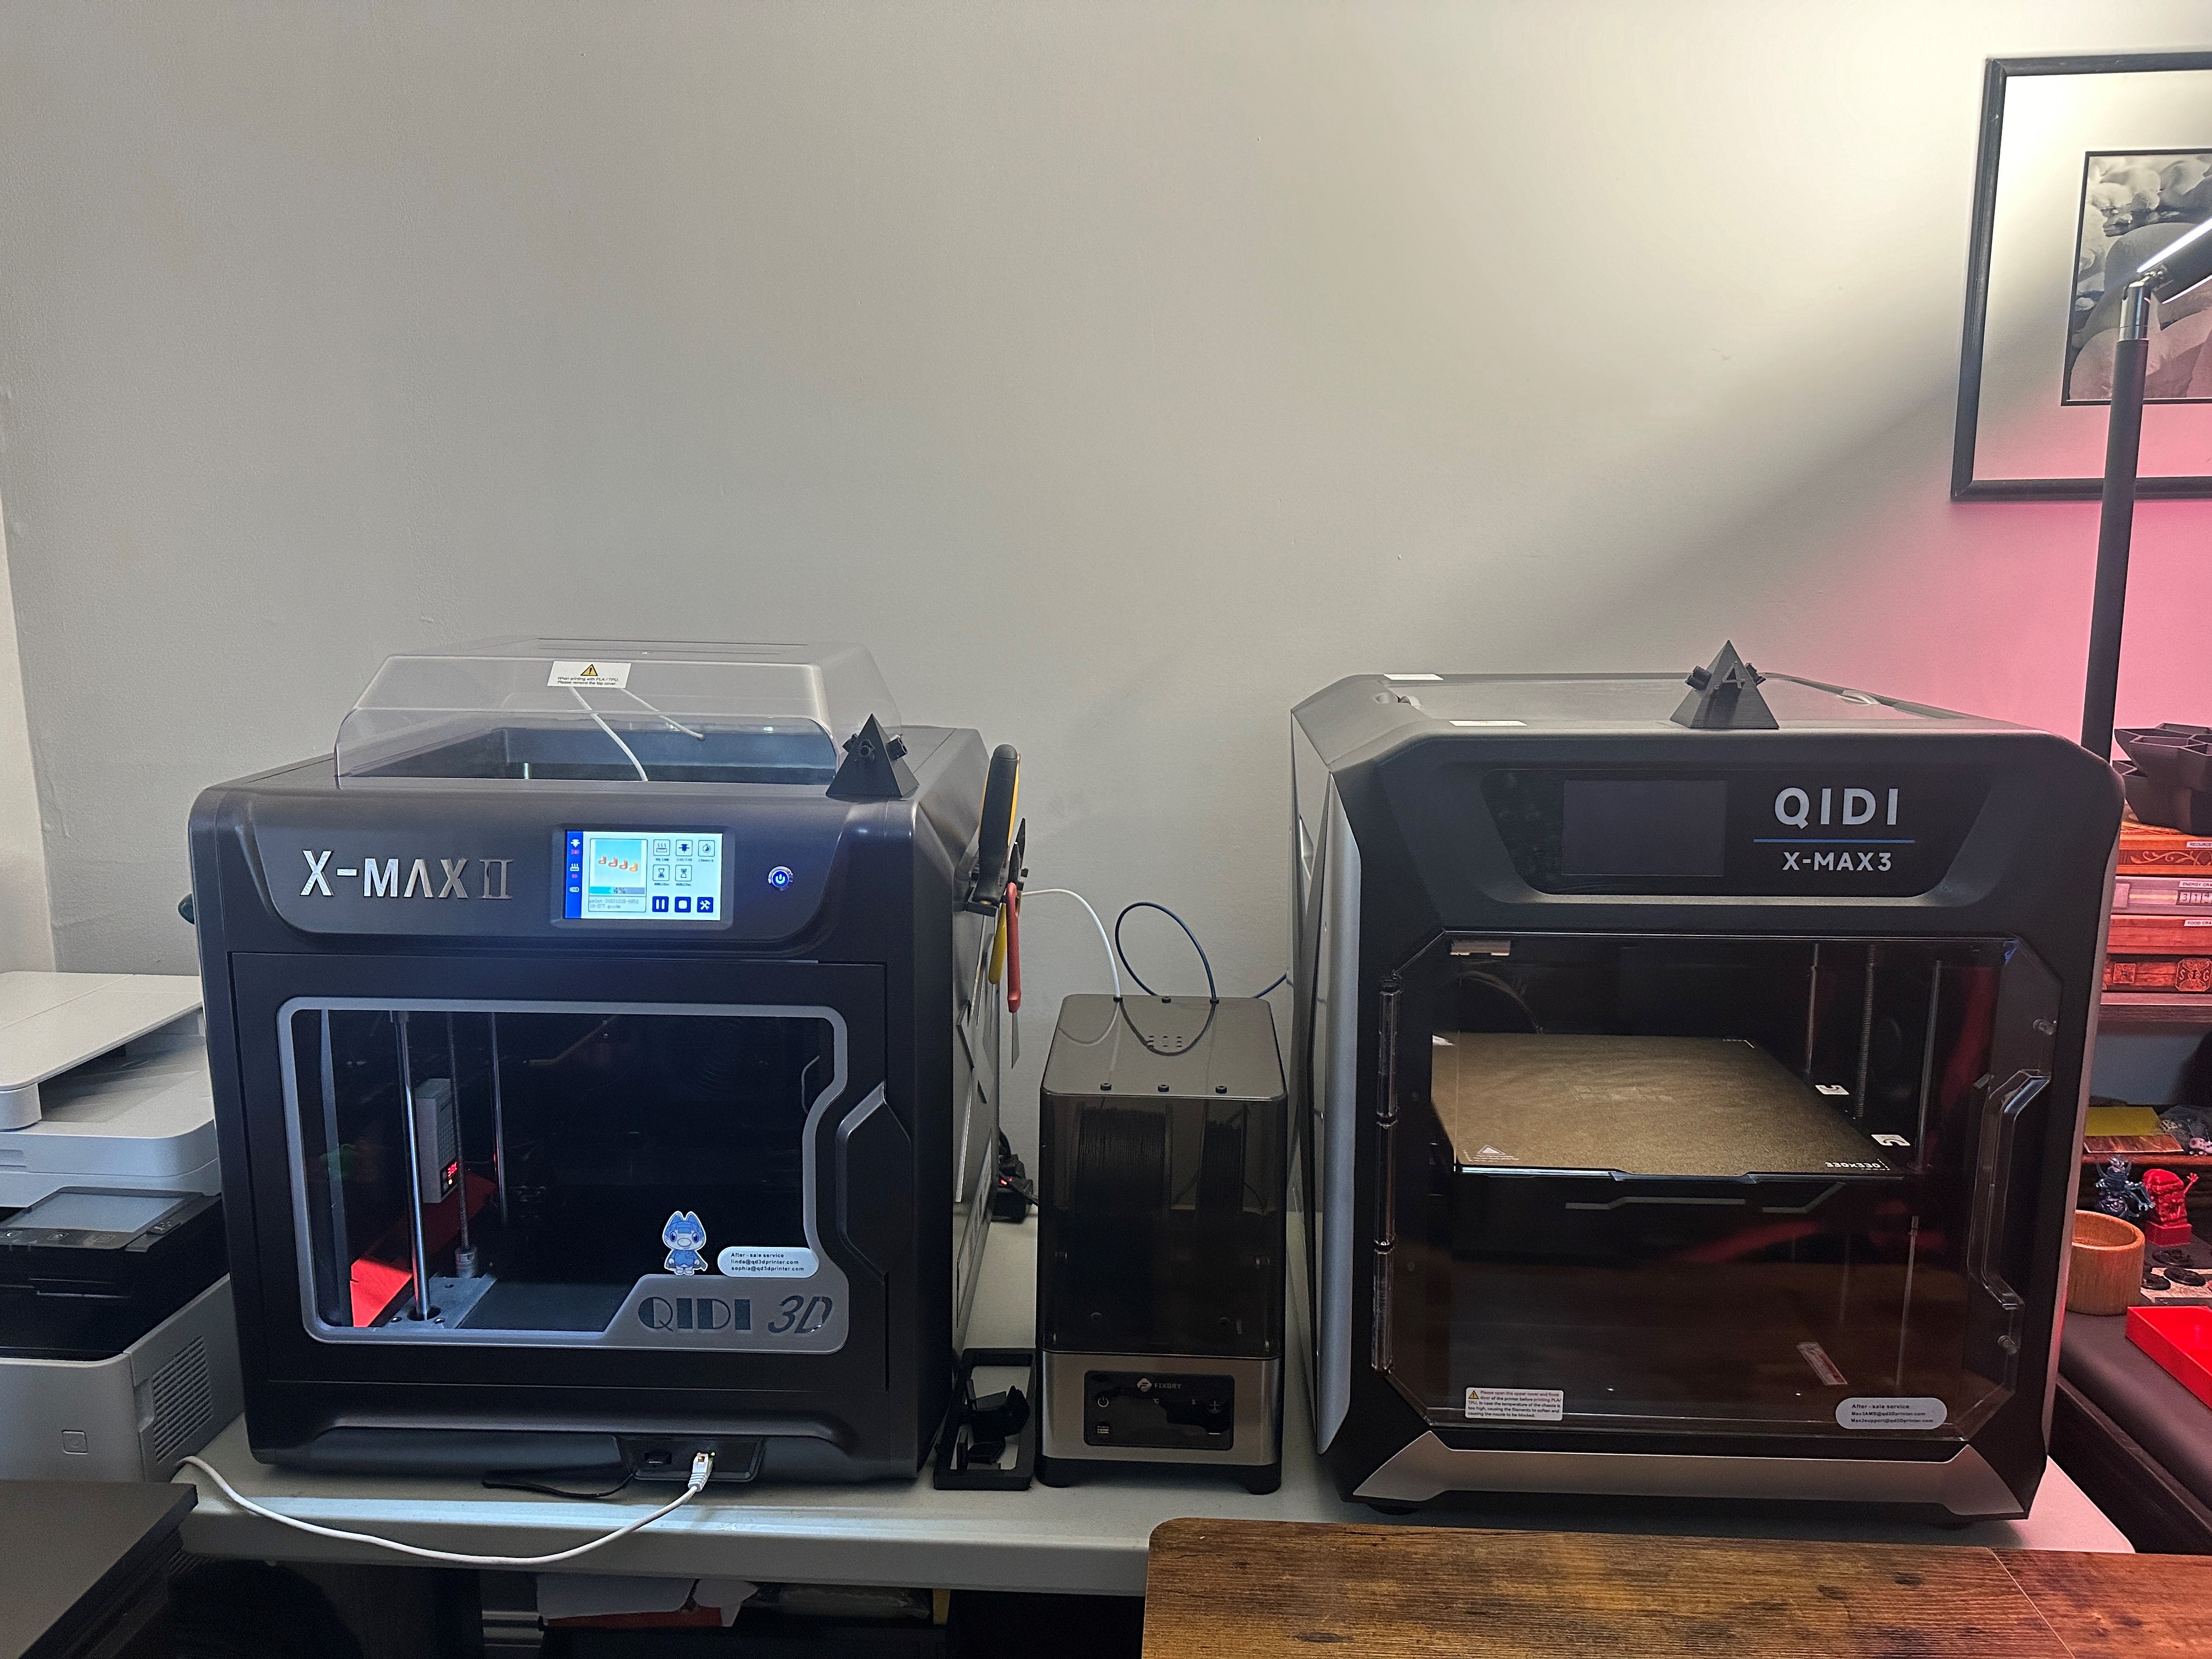 Imprimante 3D GENERIQUE Imprimantes 3D QIDI TECH i Fast Impression